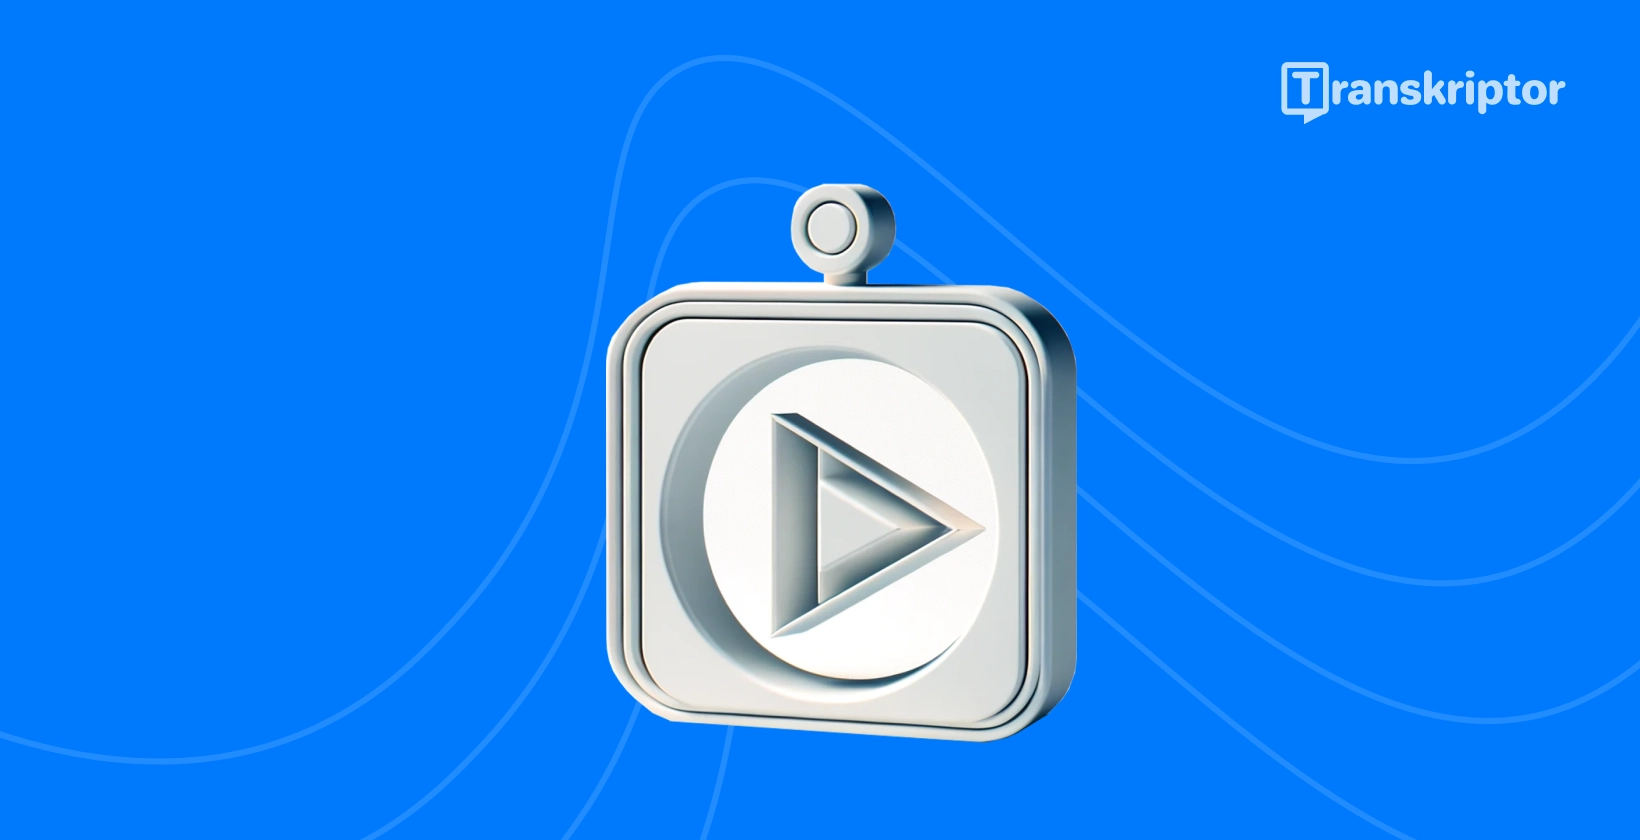 YouTube transskriptionsguidegrafik med et afspilningsknapikon til at repræsentere videoindhold.